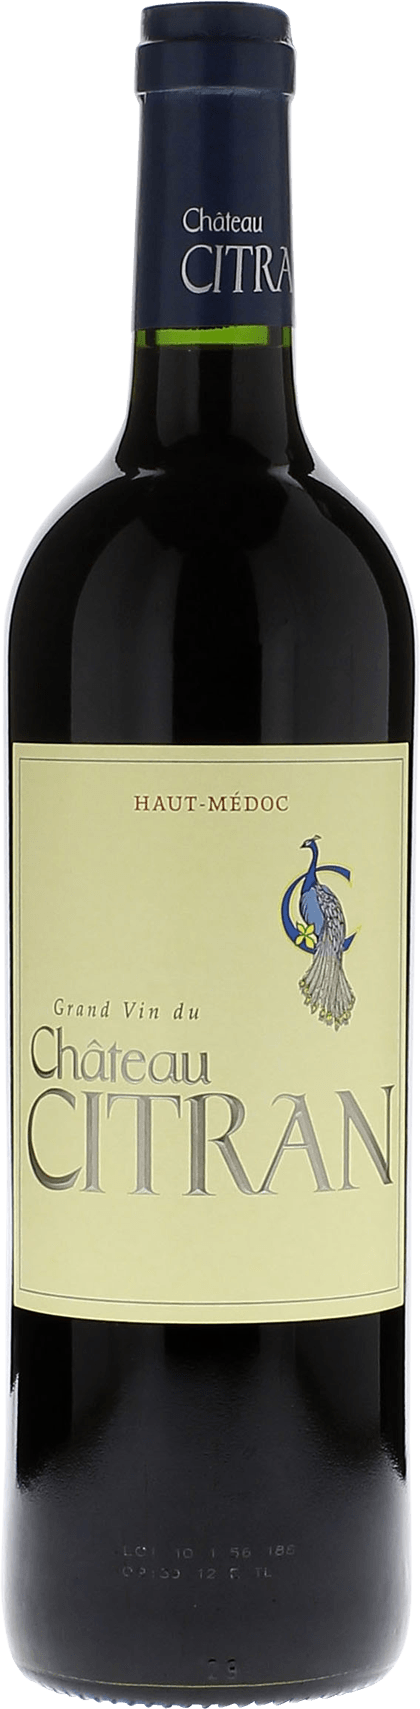 Citran 1998  Haut-Mdoc, Slection Bordeaux Rouge